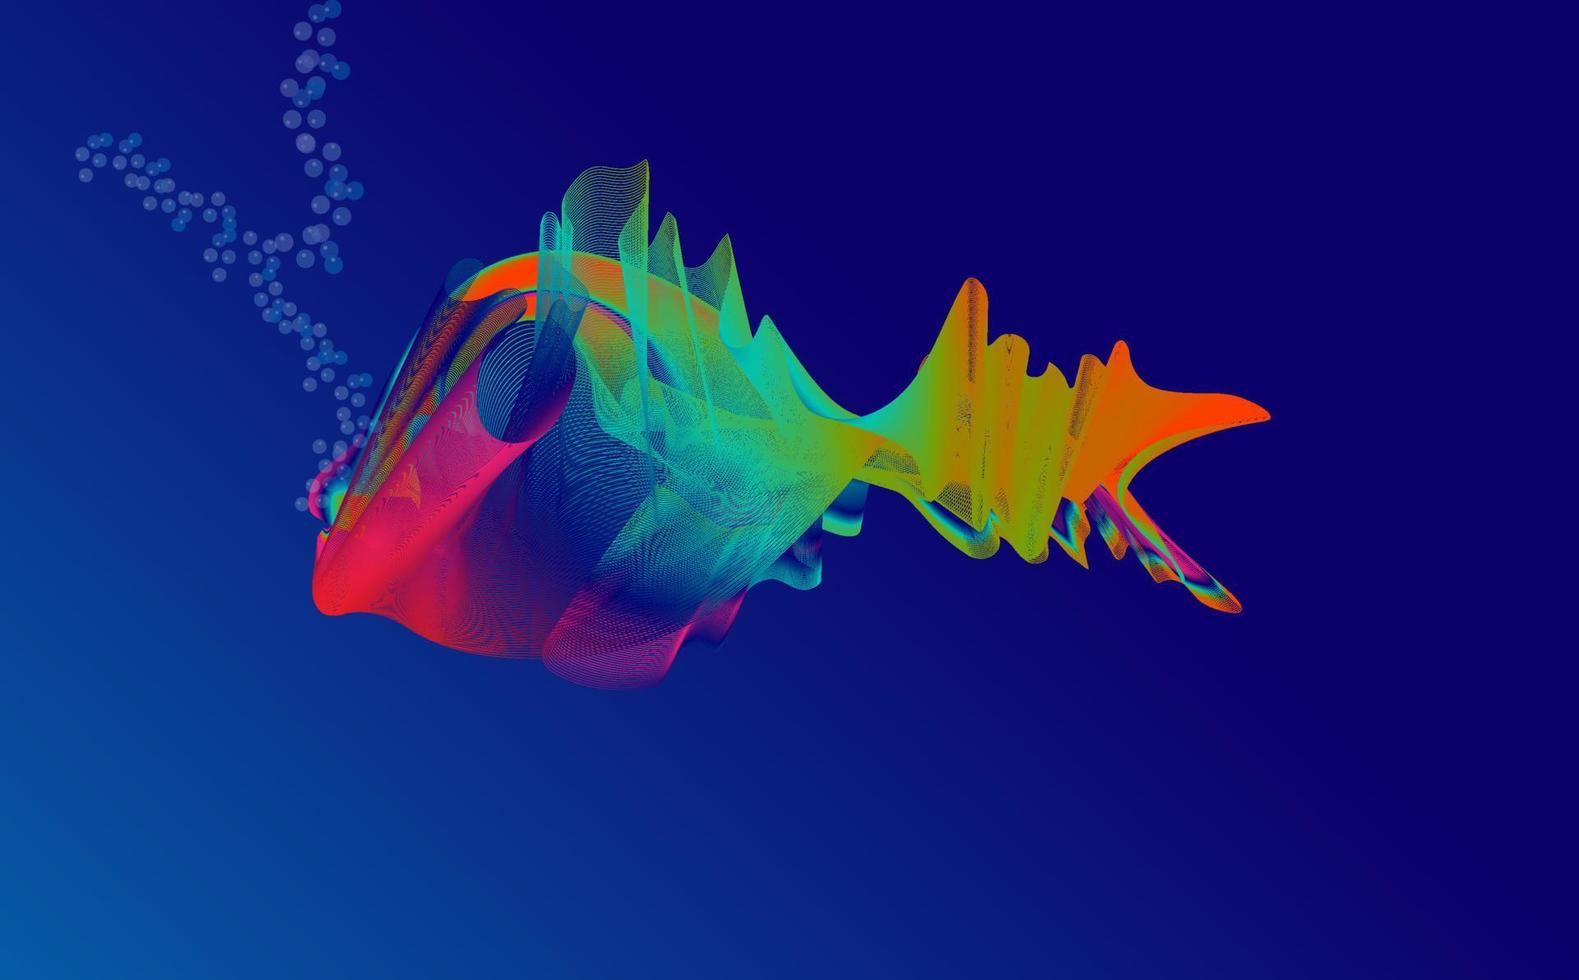 abstracte illustratie van betta-vissen, samengesteld uit kleurrijke vloeiende lijnen, op een marineblauwe achtergrond vector